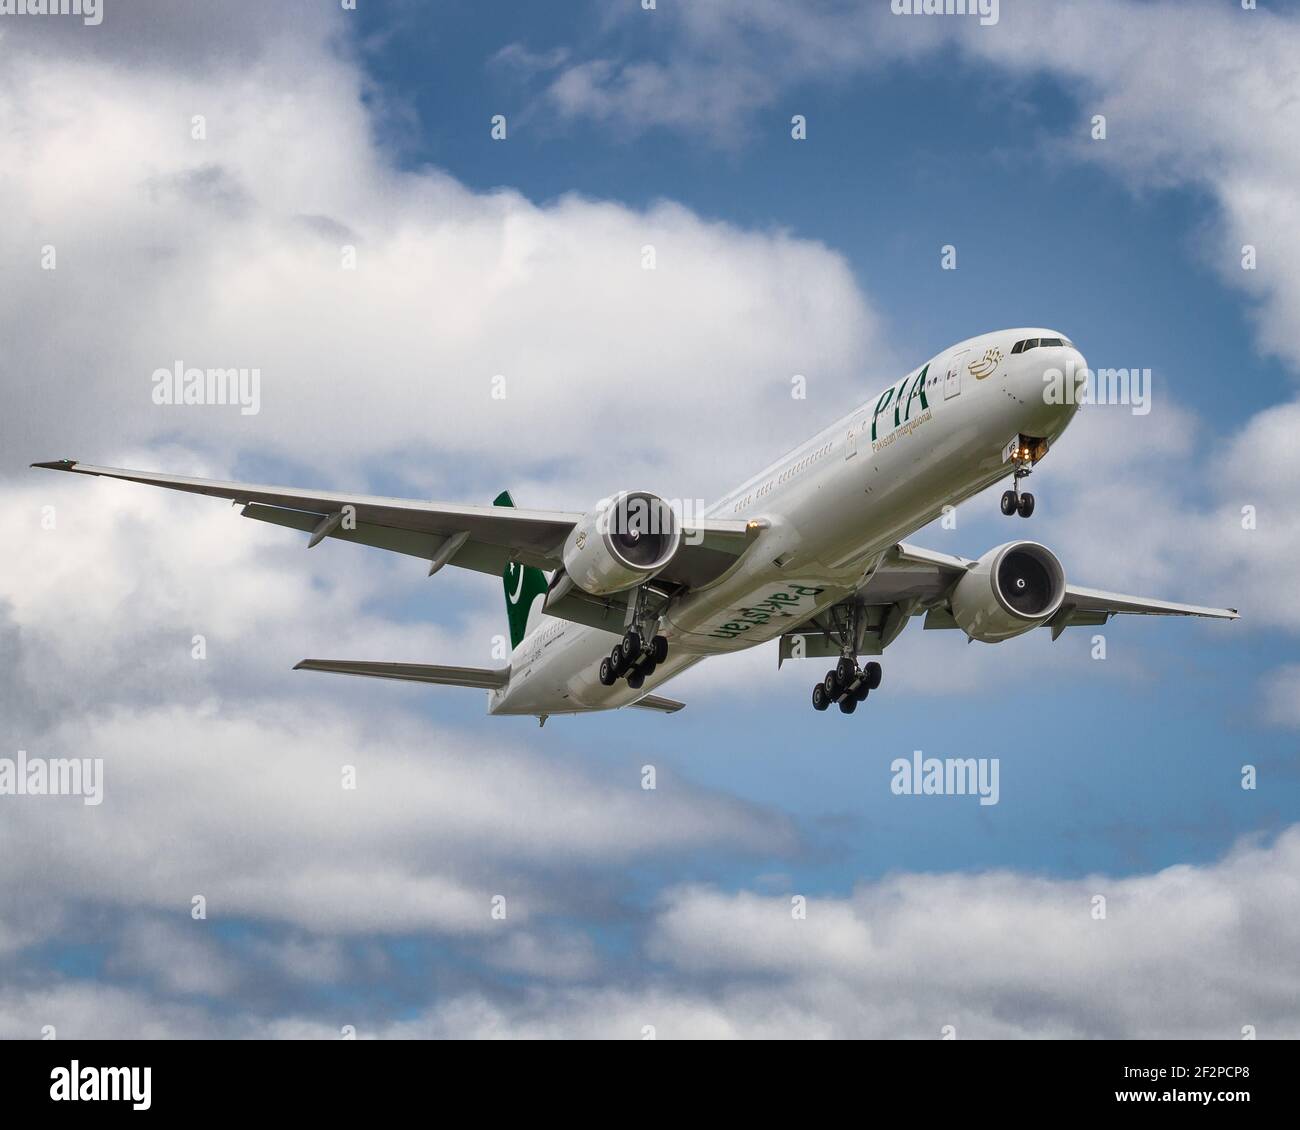 Londres, Heathrow Airport - février 2020: Pia, Pakistan International Airlines sur son approche finale par des nuages brisés. Image Abdul Quraishi Banque D'Images